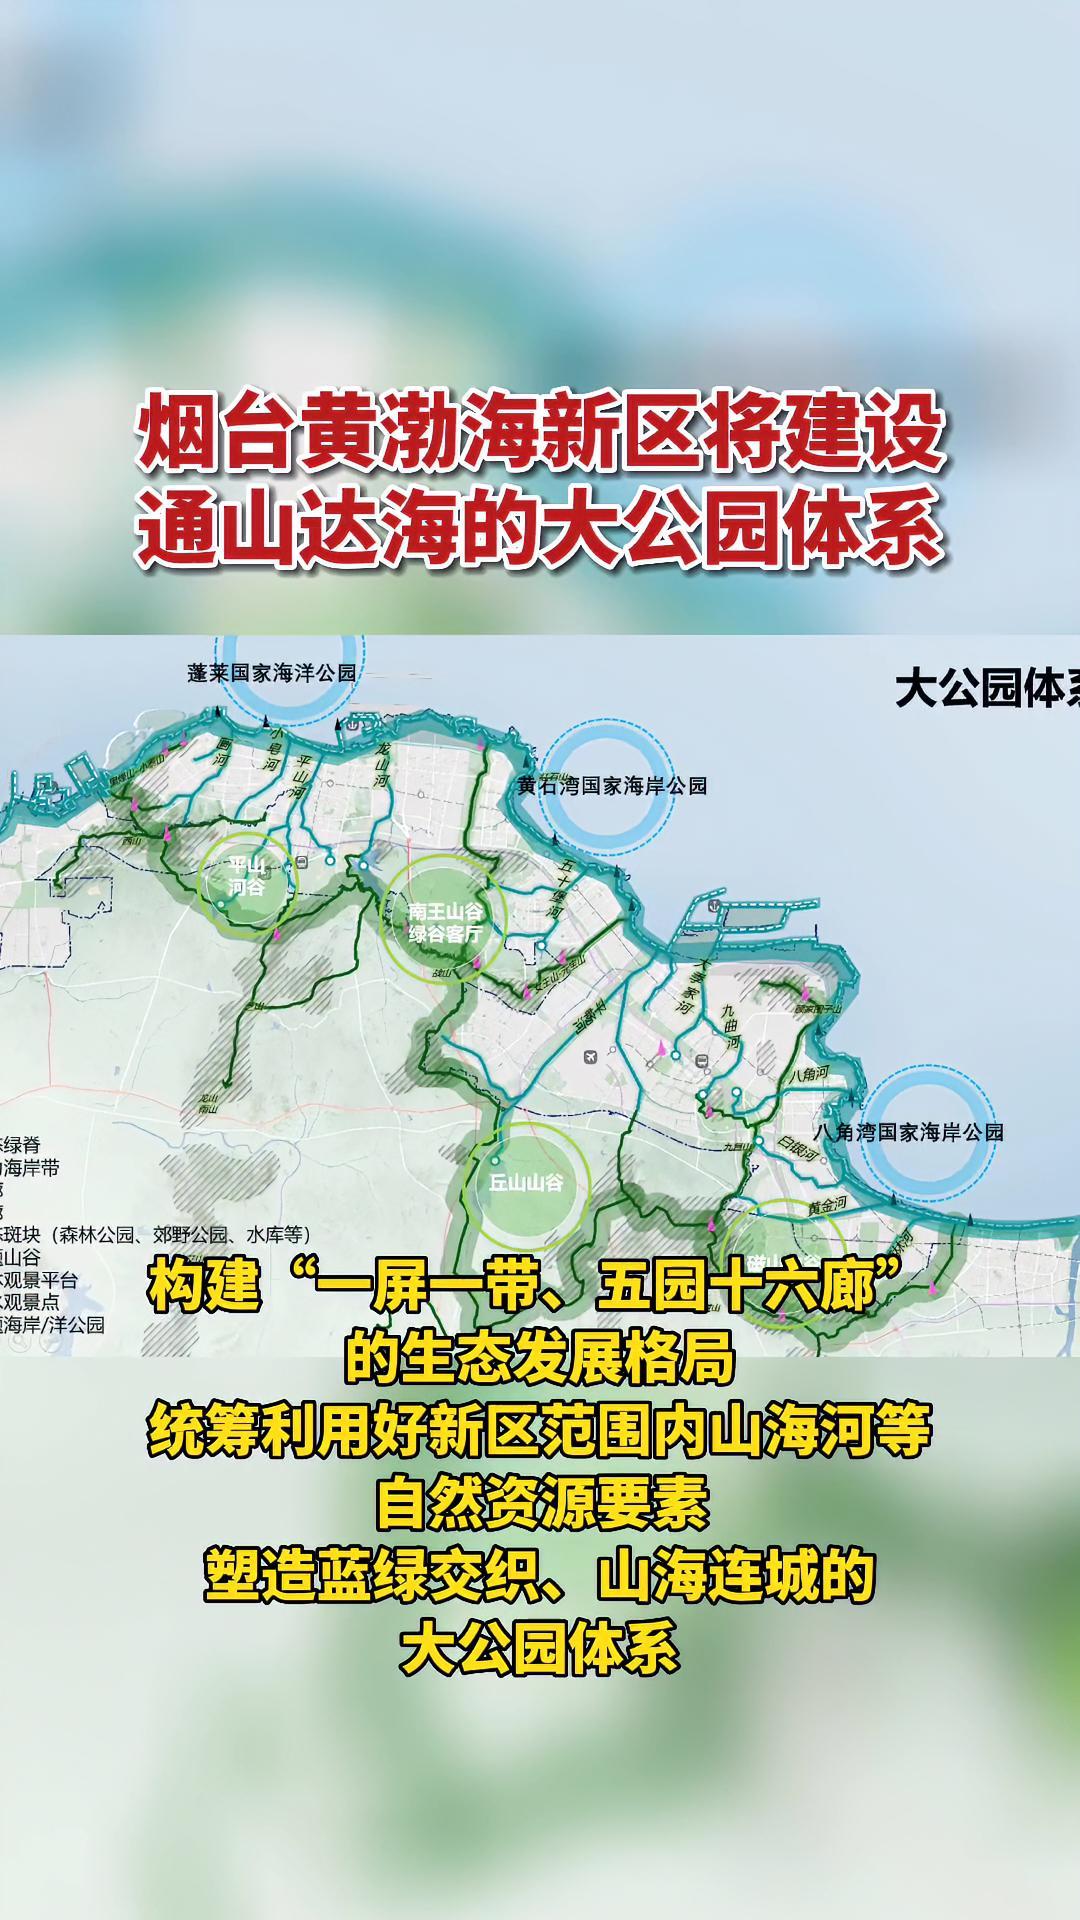 烟台黄渤海新区将建设通山达海的大公园体系烟台黄渤海新区